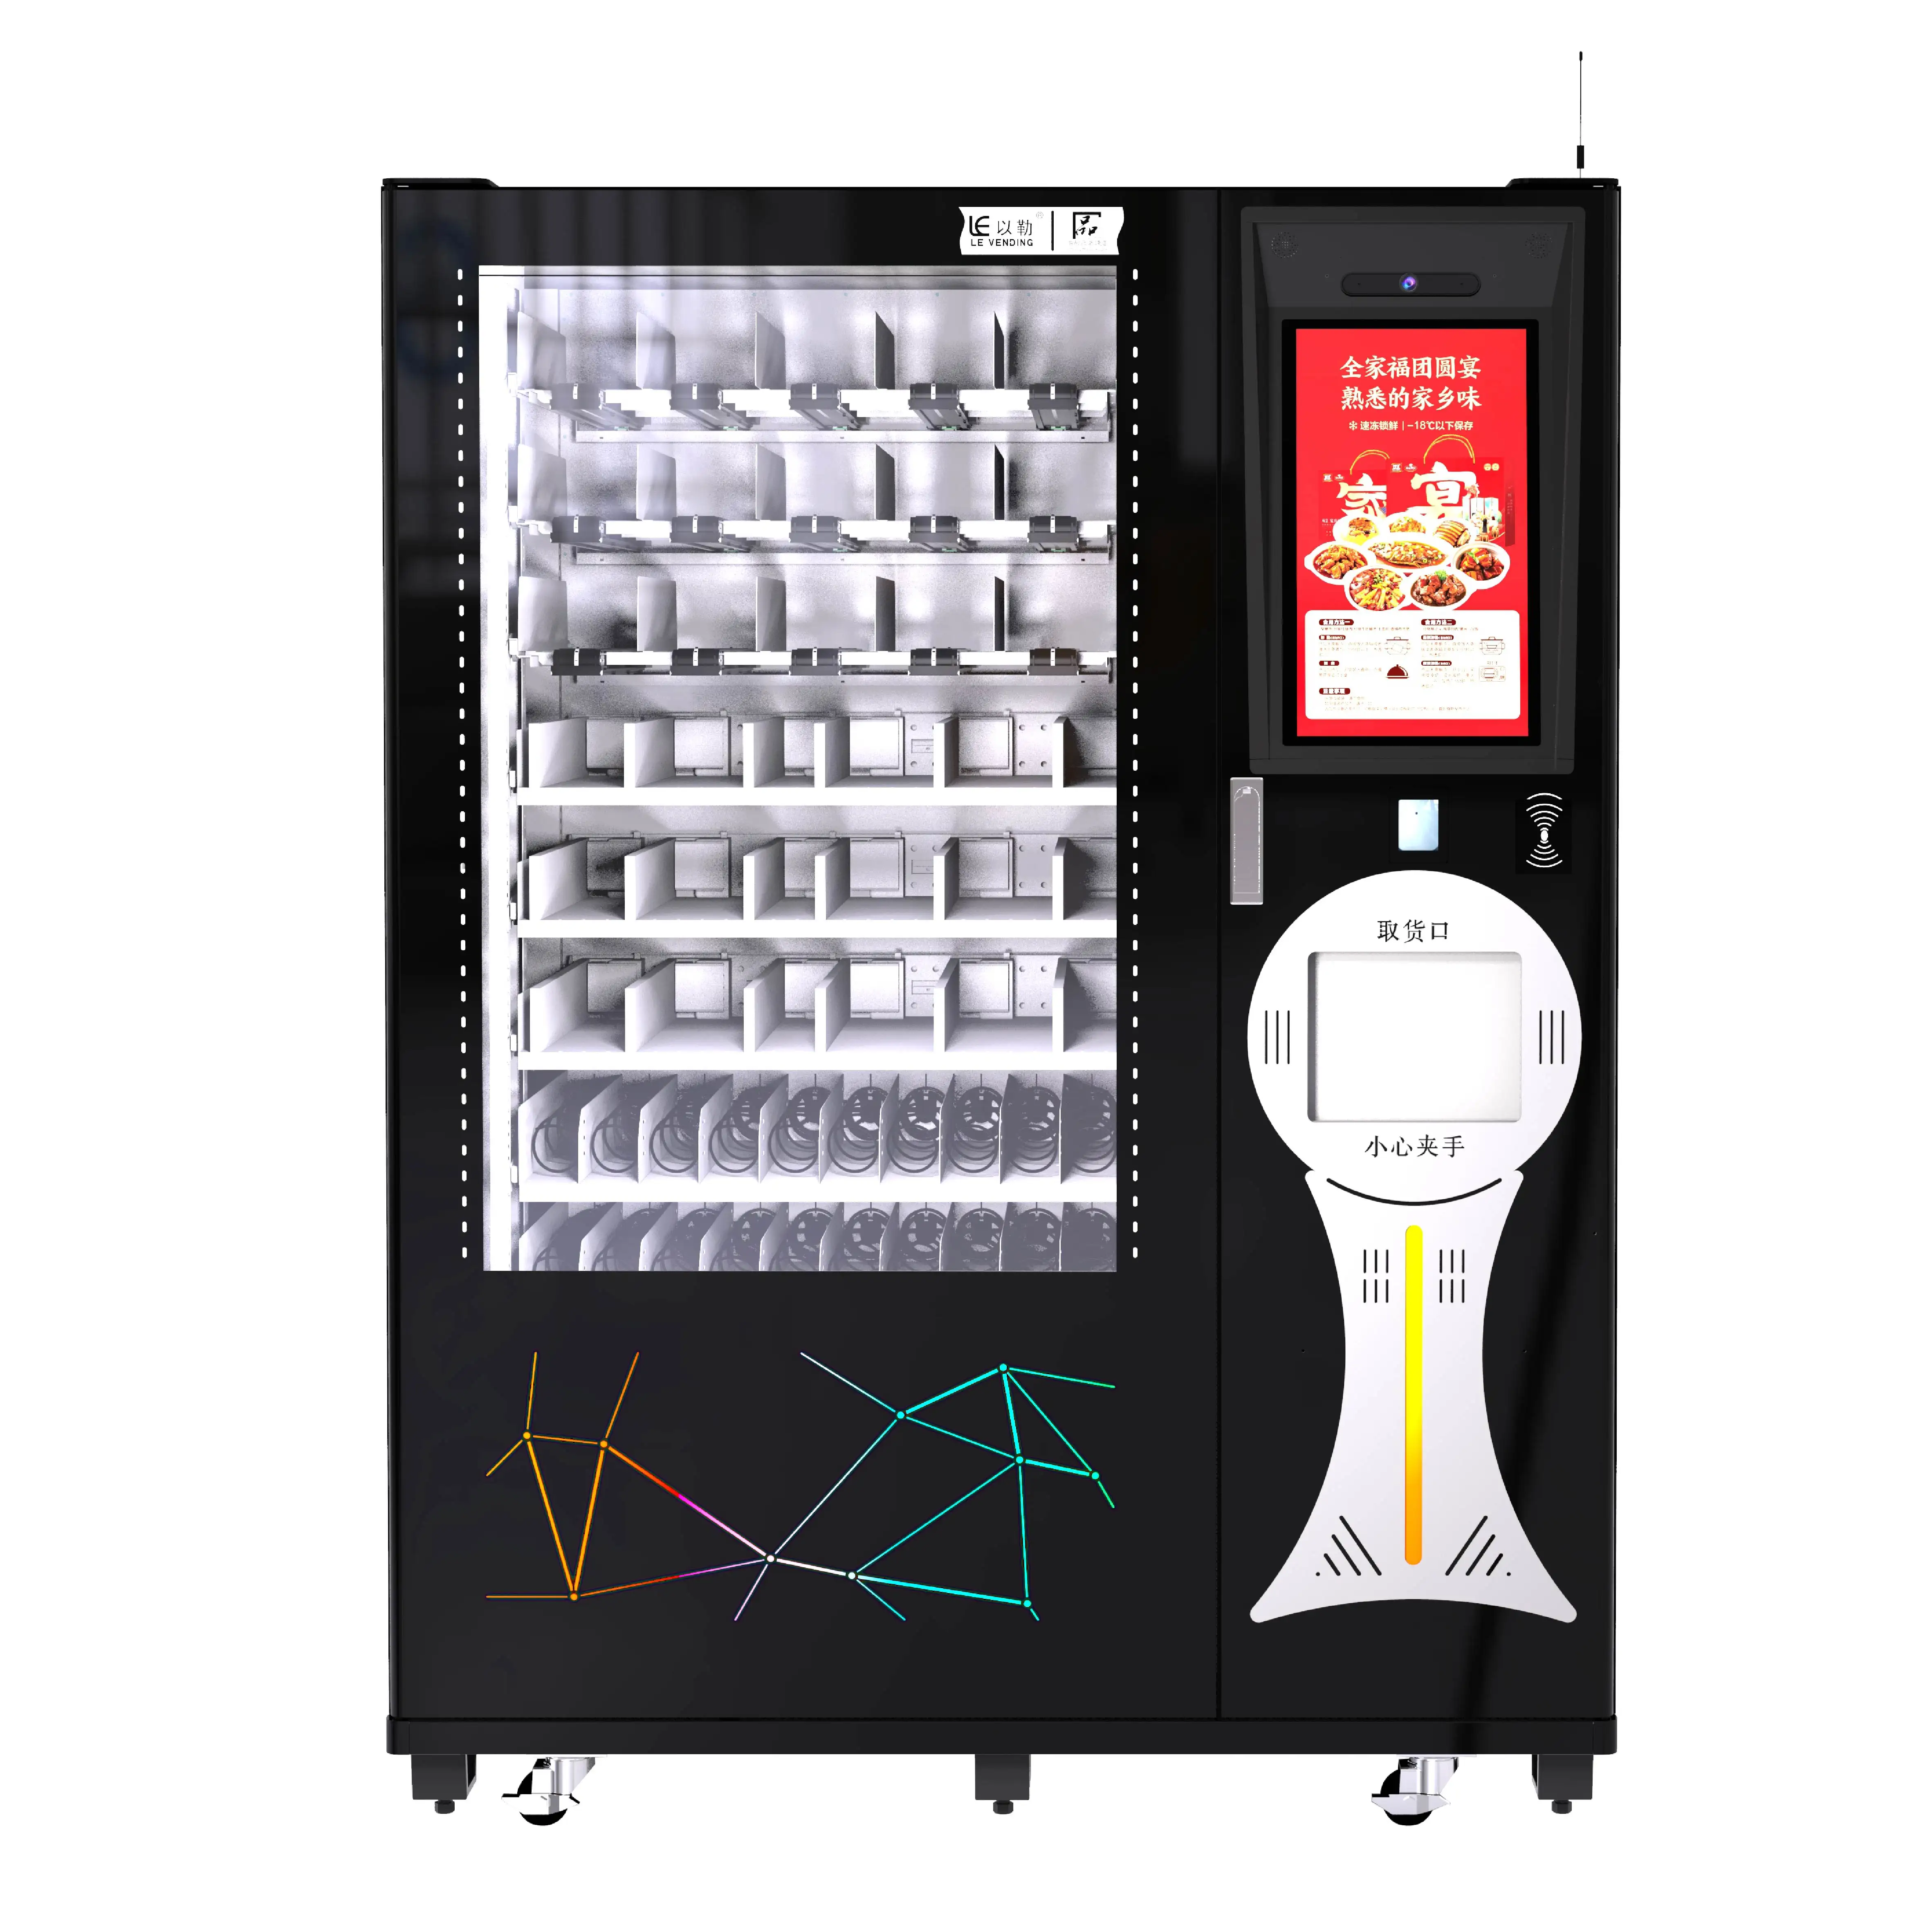 Verkaufs automat für warme Speisen mit Mikrowellen-Lifter transportieren Lebensmittel